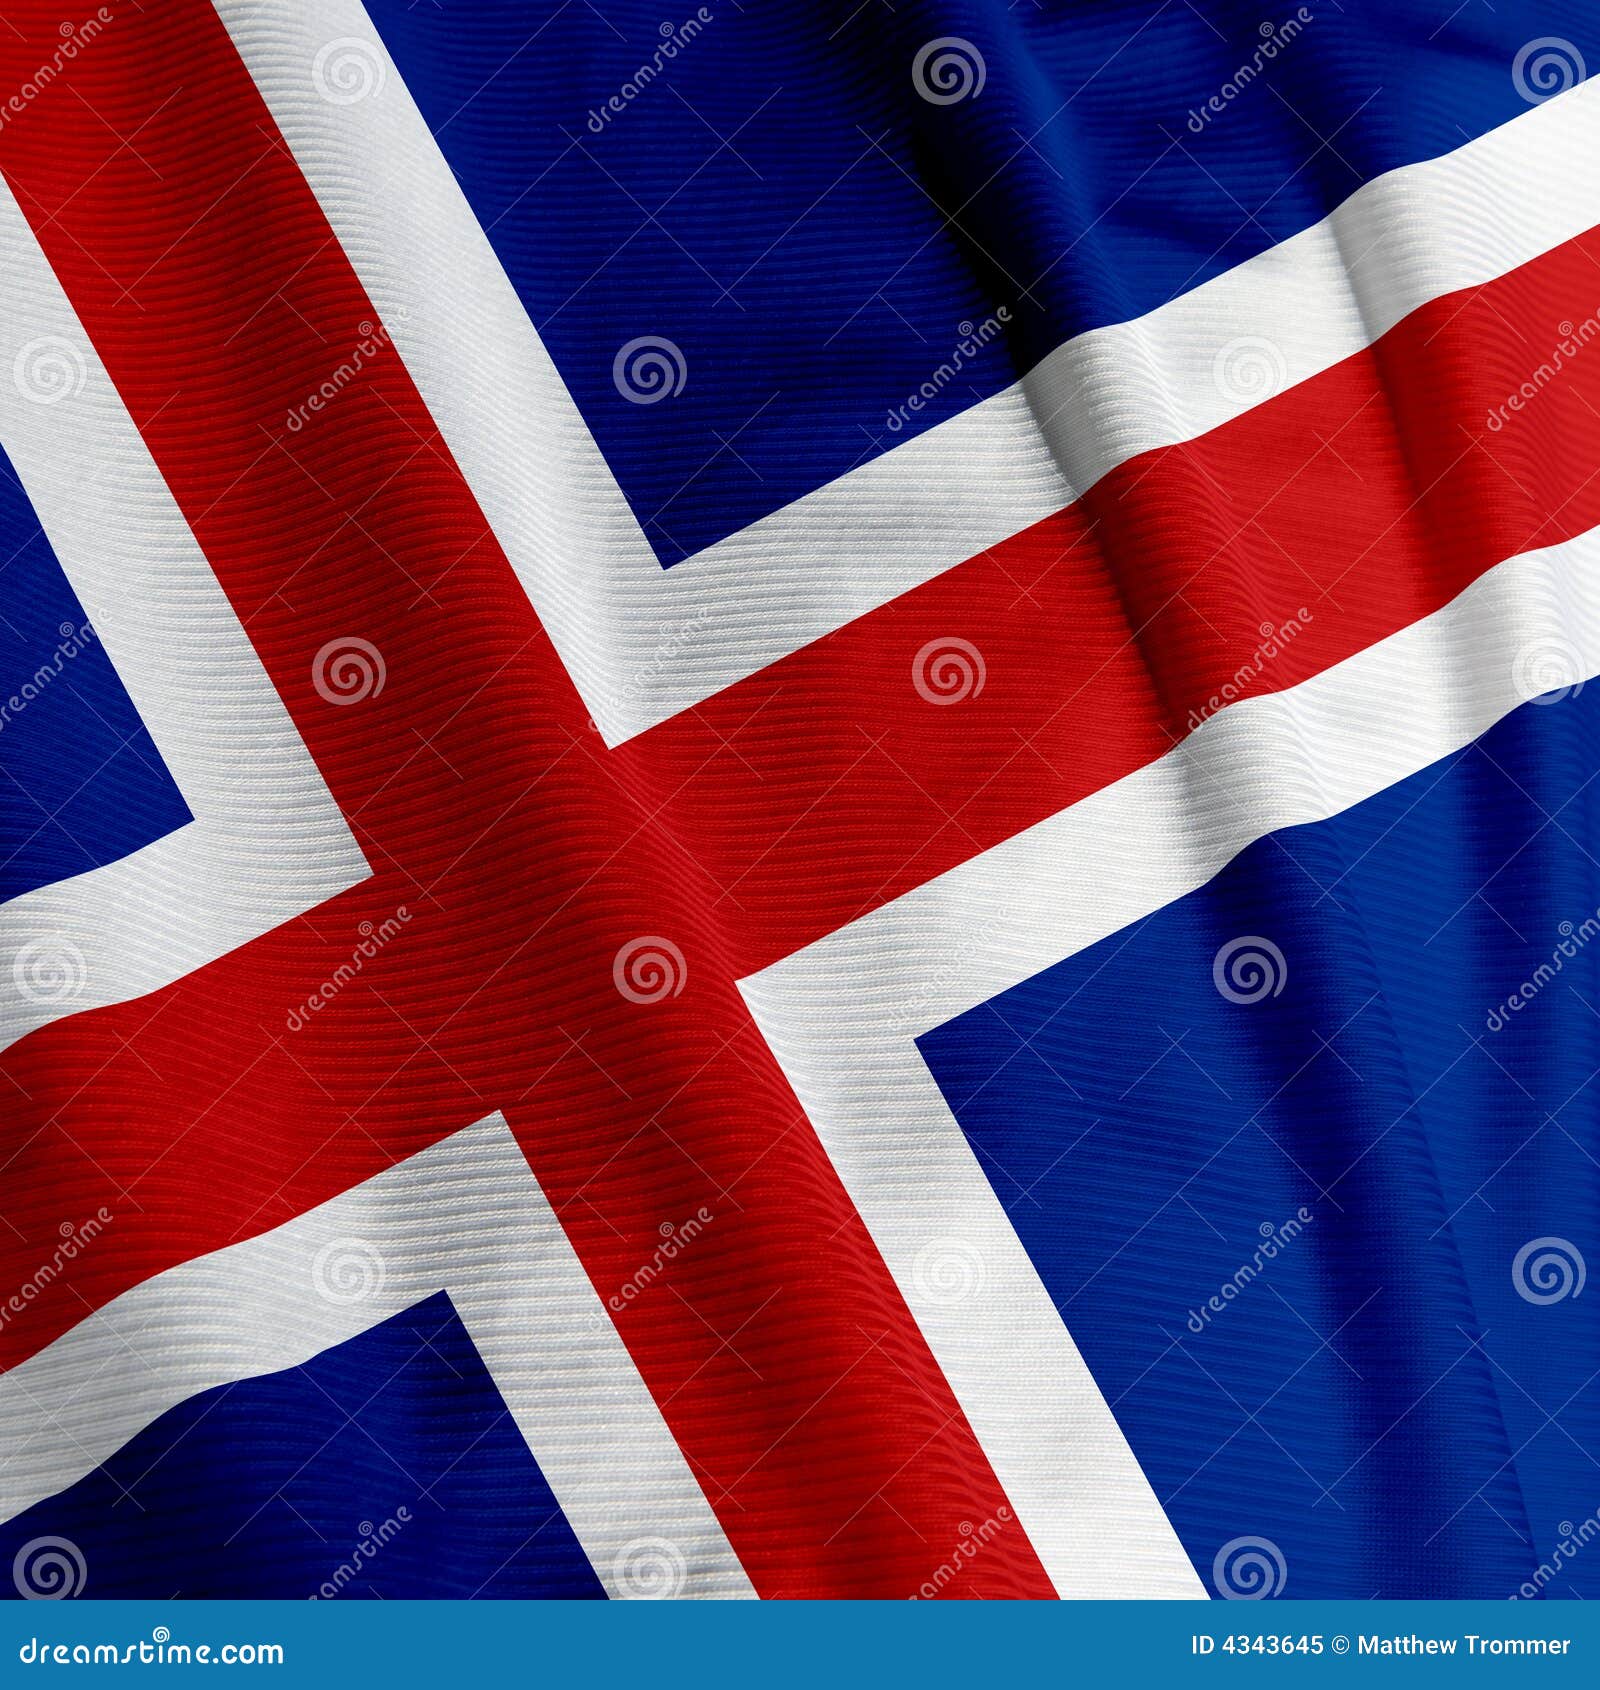 icelandic flag closeup